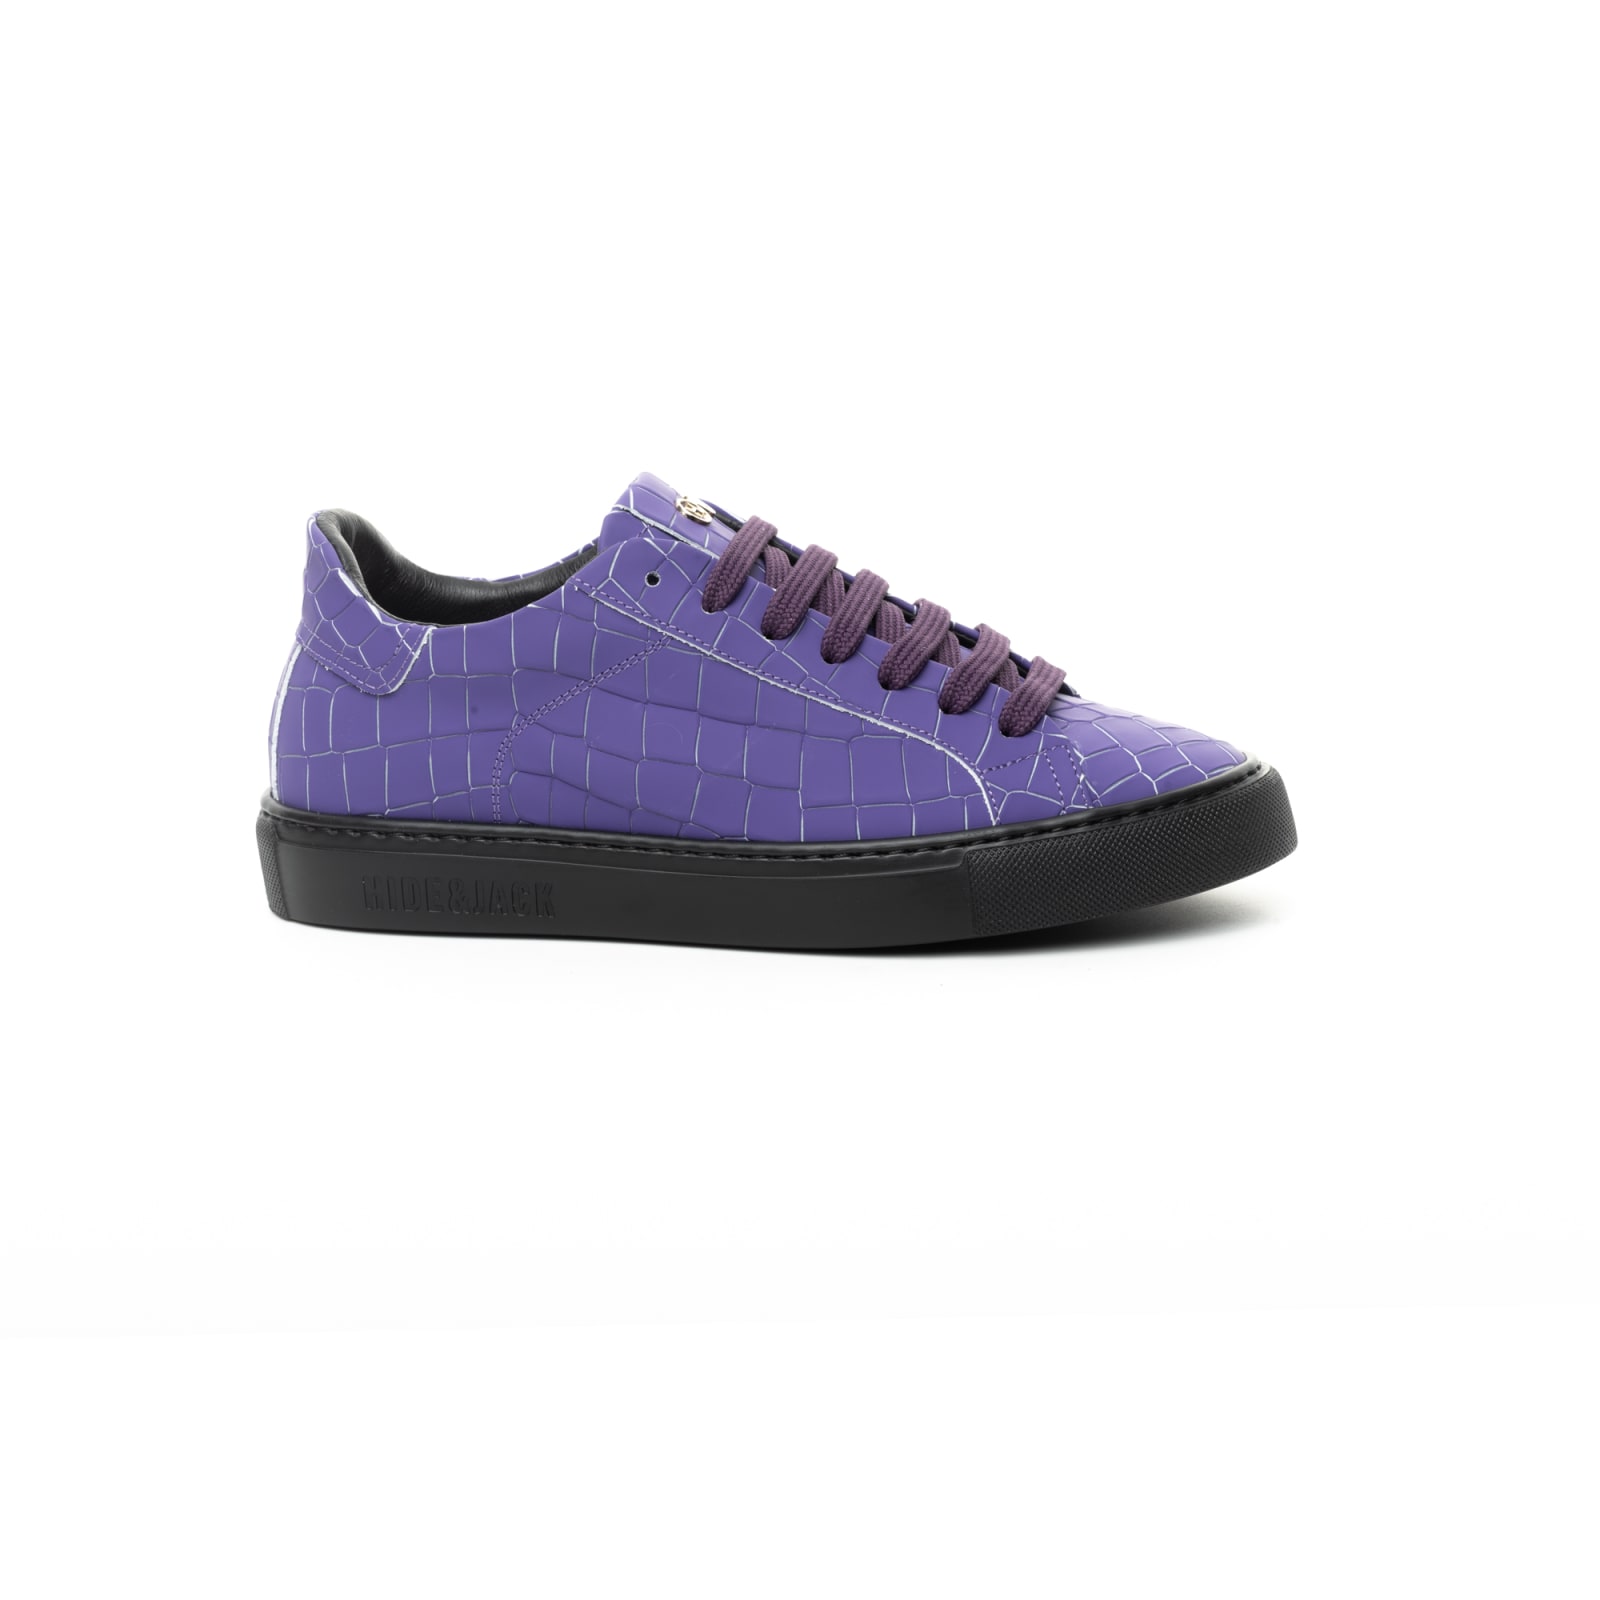 Hide & Jack Low Top Sneaker - Essence Fluo Purple Trb